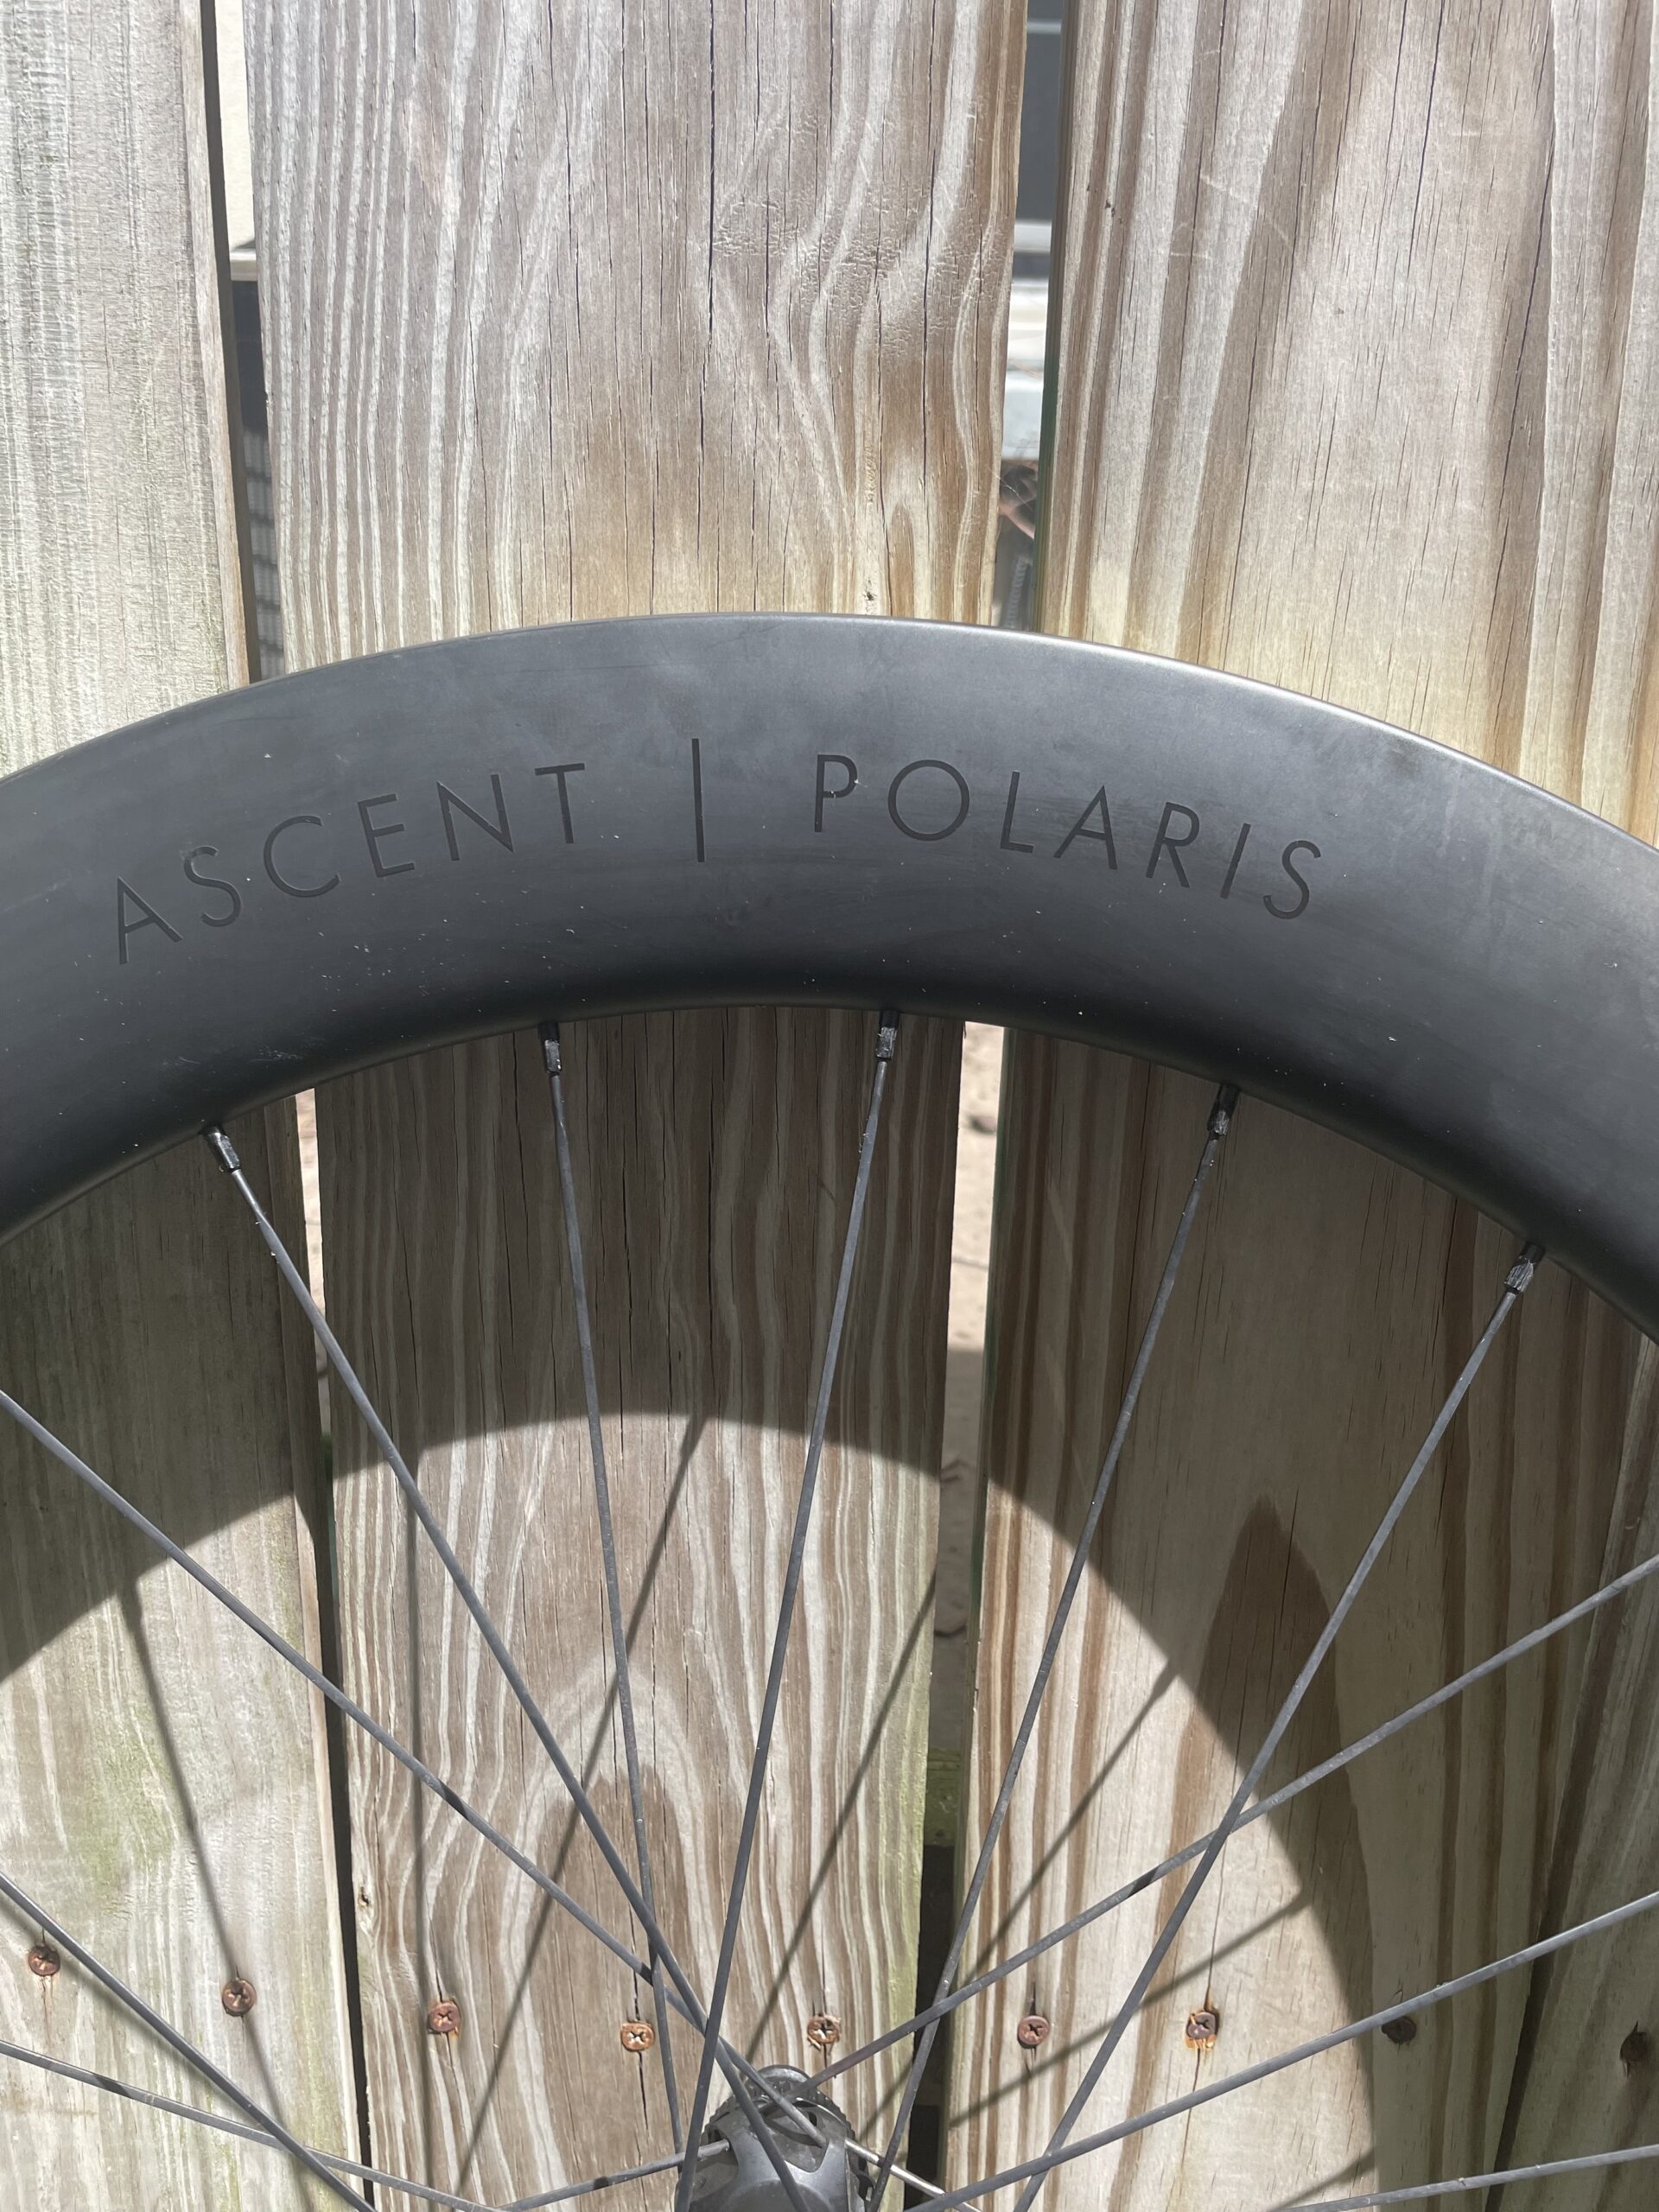 Ascent Polaris 69